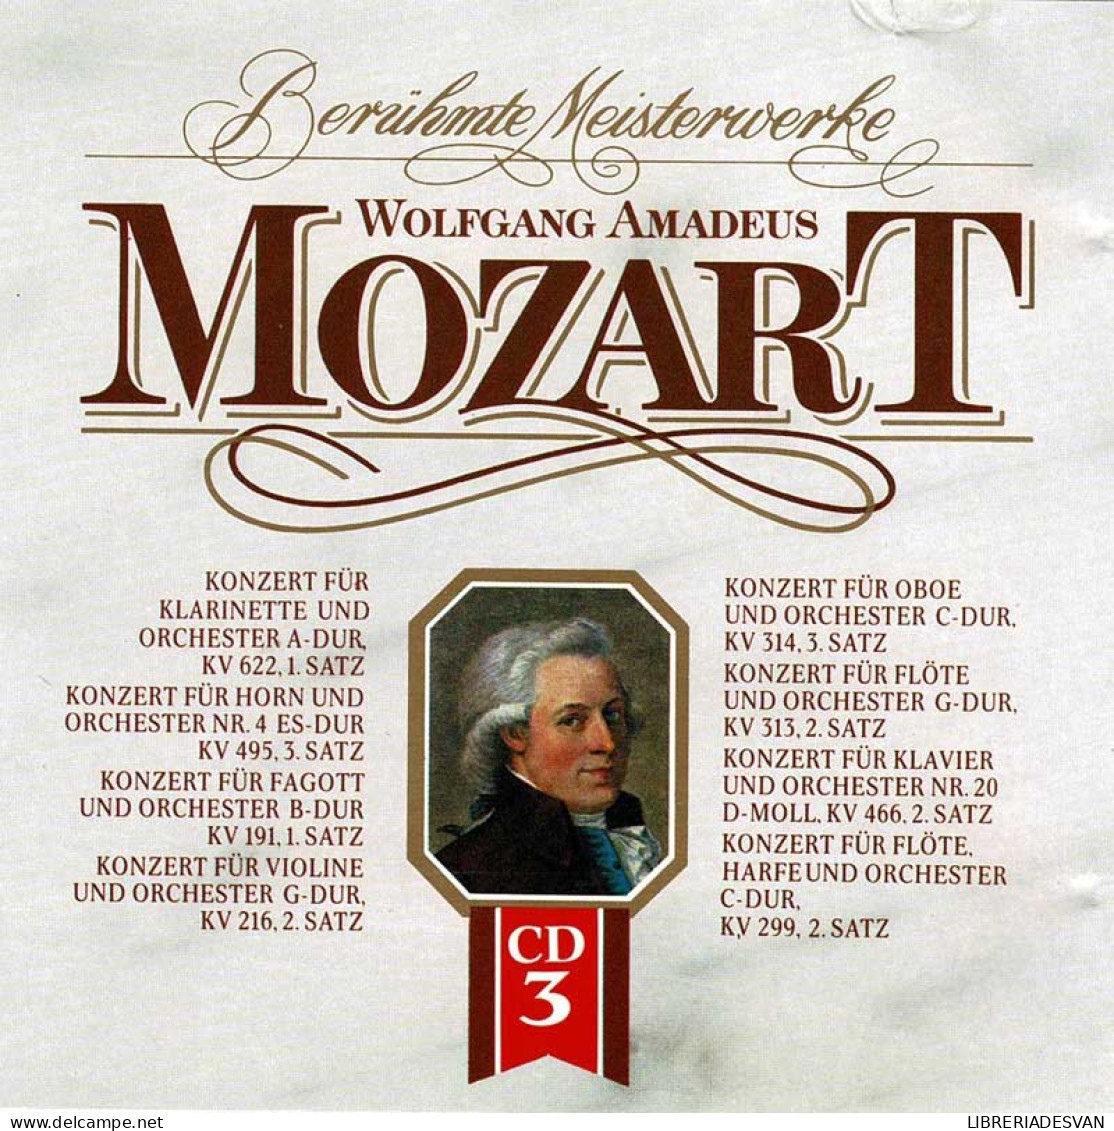 Wolfgang Amadeus Mozart - Beruhmte Meisterwerke Vol. 3. CD - Classical